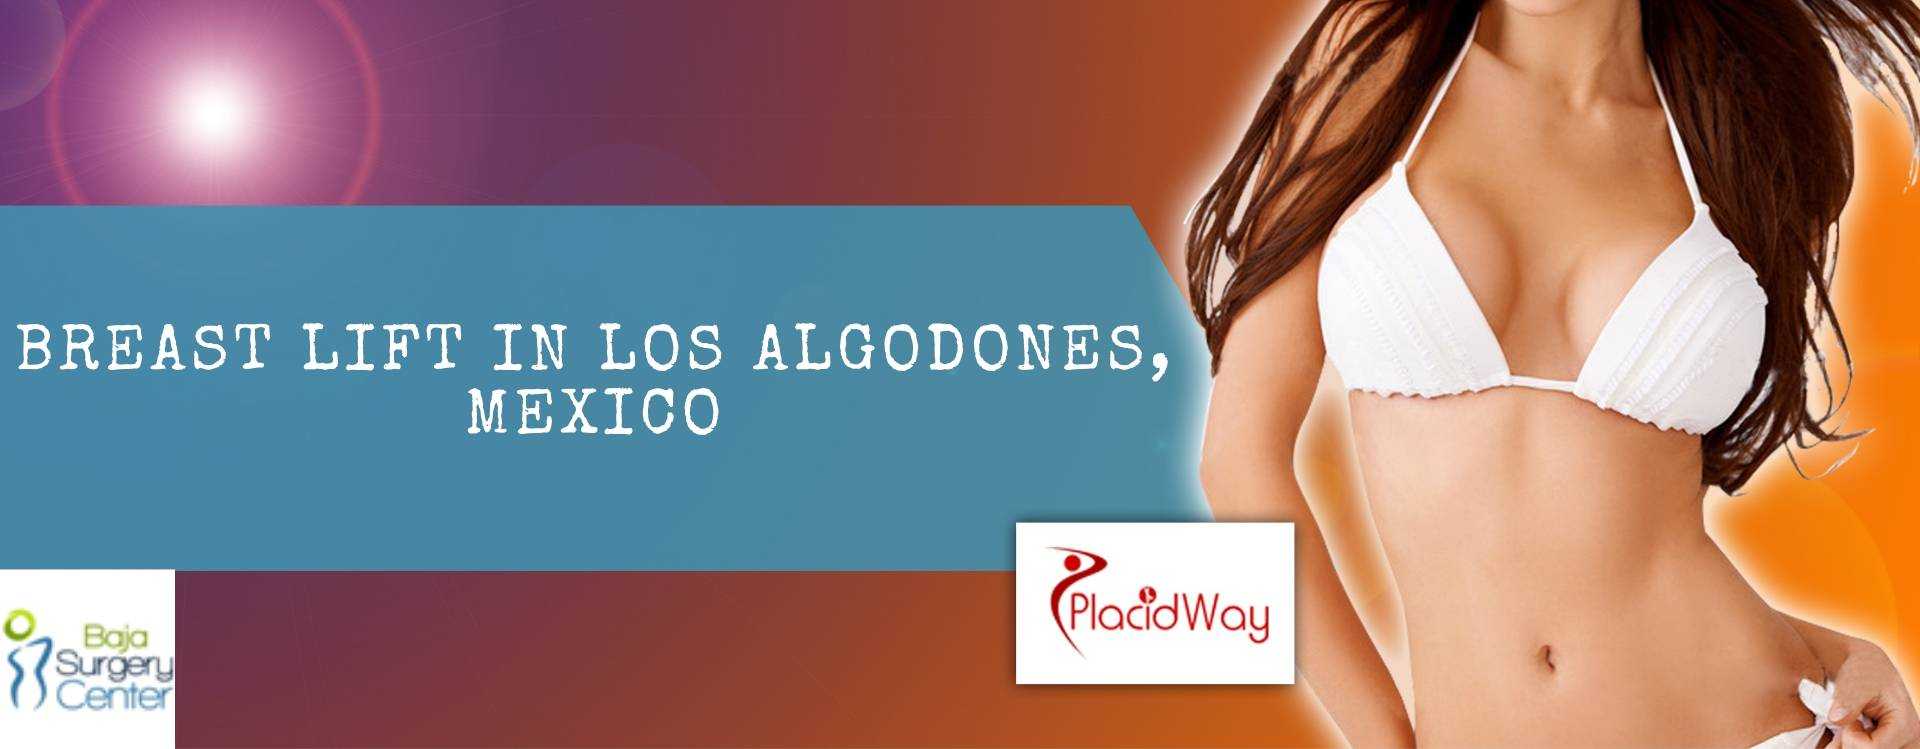 Breast Lift in Los Algodones, Mexico